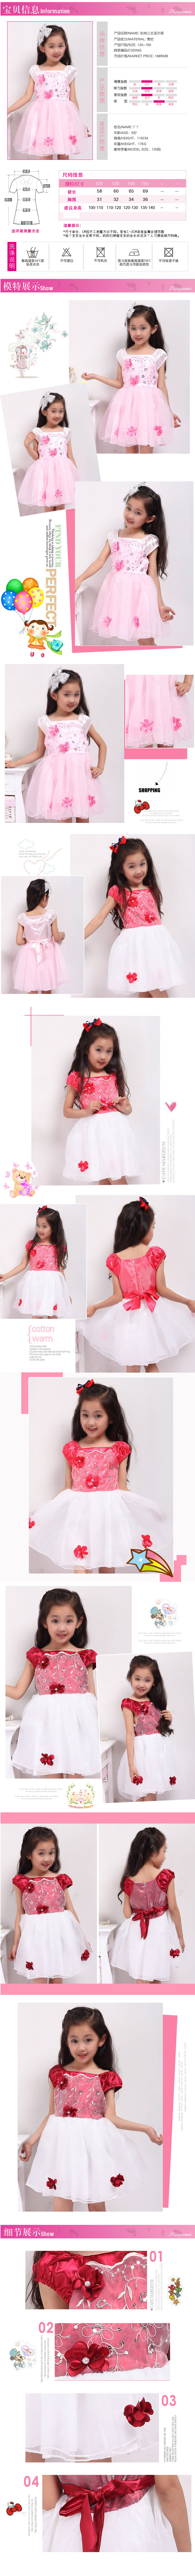 小公主花裙可爱女童服装描述模板